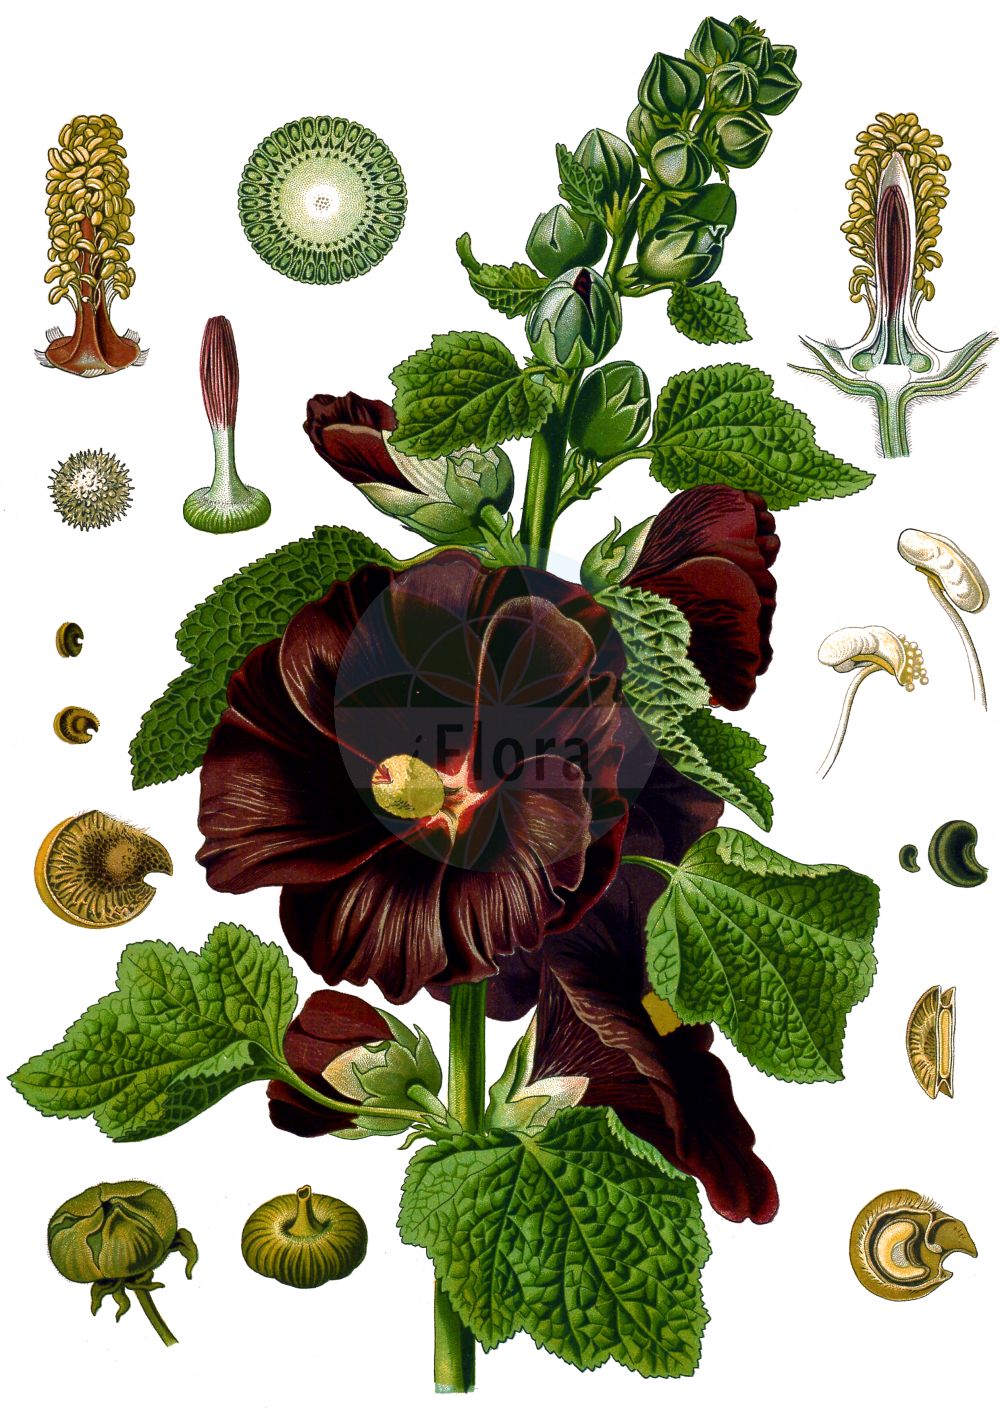 Historische Abbildung von Alcea rosea (Gewöhnliche Stockrose - common hollyhock). Das Bild zeigt Blatt, Bluete, Frucht und Same. ---- Historical Drawing of Alcea rosea (Gewöhnliche Stockrose - common hollyhock). The image is showing leaf, flower, fruit and seed.(Alcea rosea,Gewöhnliche Stockrose,common hollyhock,Alcea ficifolia,Alcea rosea,Althaea ficifolia,Althaea rosea,Gewoehnliche Stockrose,common hollyhock,Alcea,Malvaceae,Malvengewächse,Mallow family,Blatt,Bluete,Frucht,Same,leaf,flower,fruit,seed,Koehler (1883-1898))